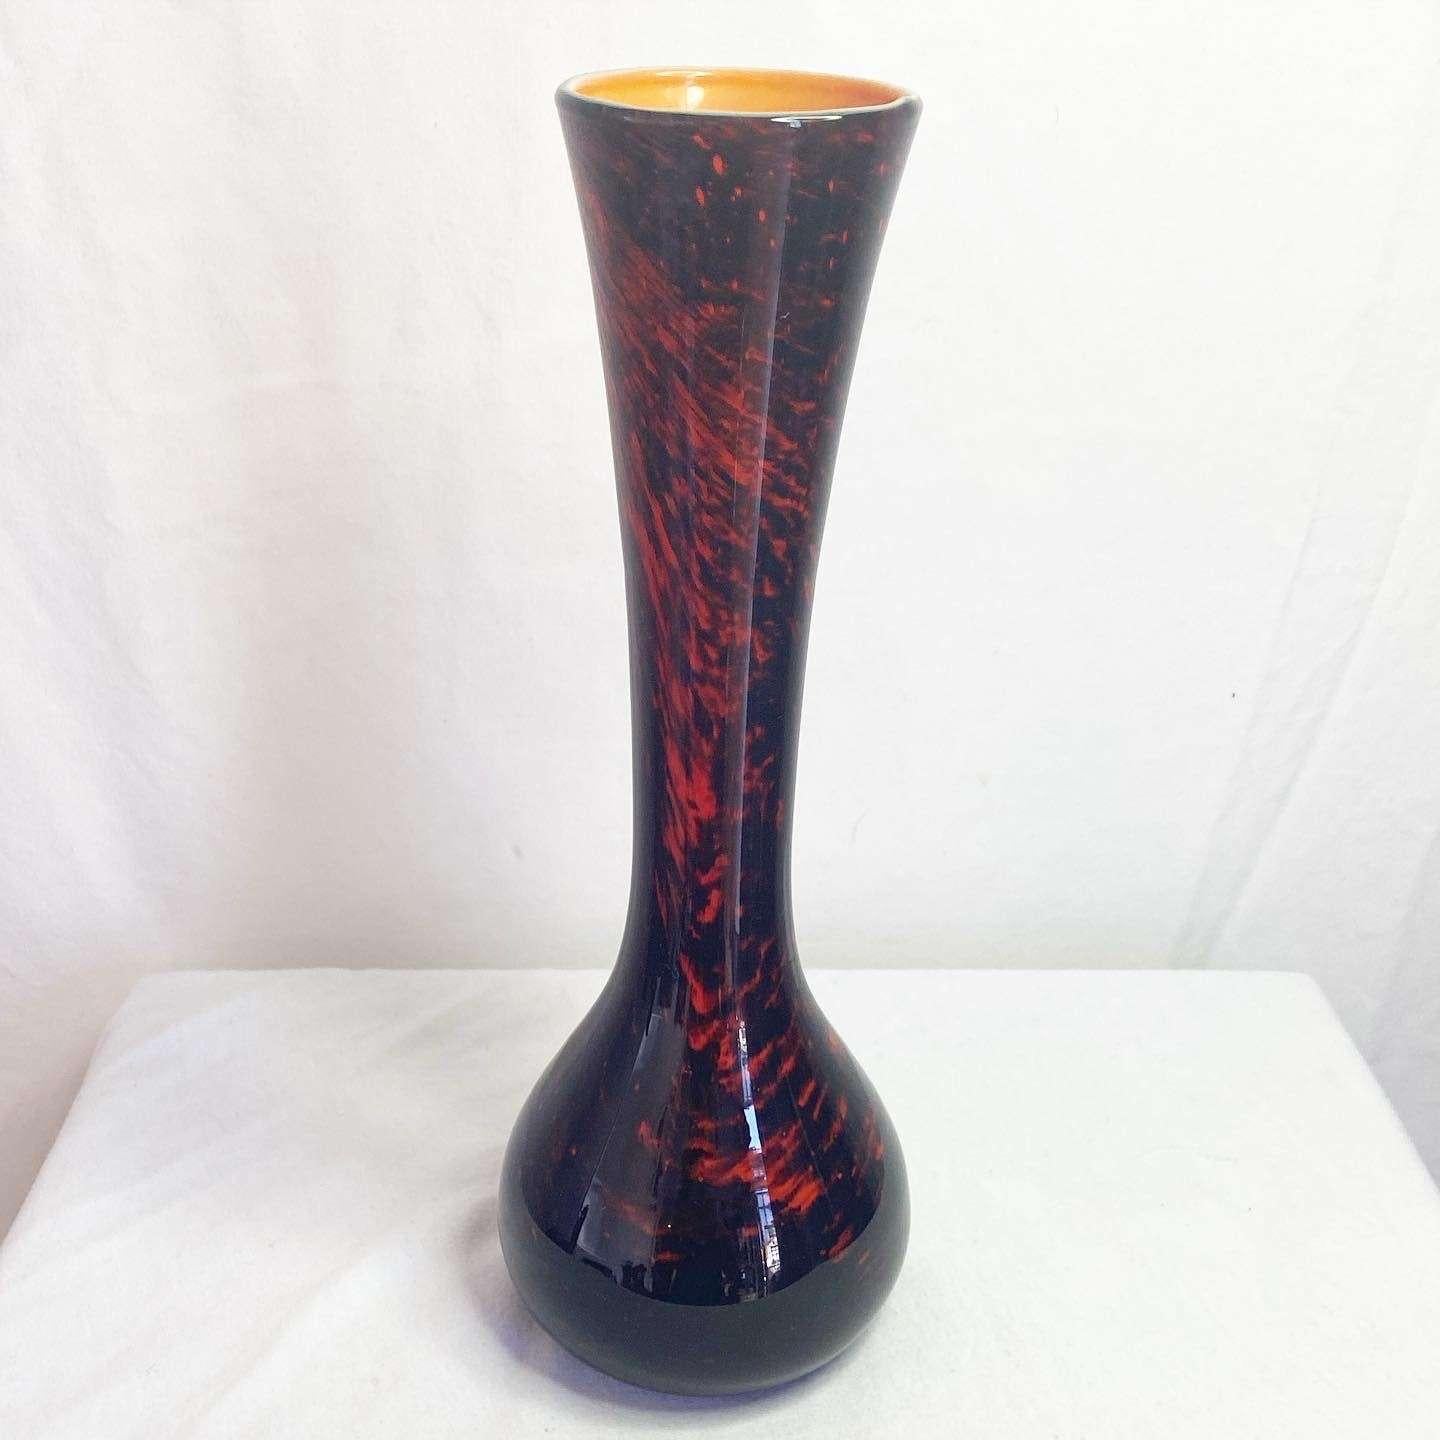 Vase postmoderne vintage en céramique noire, rouge et orange